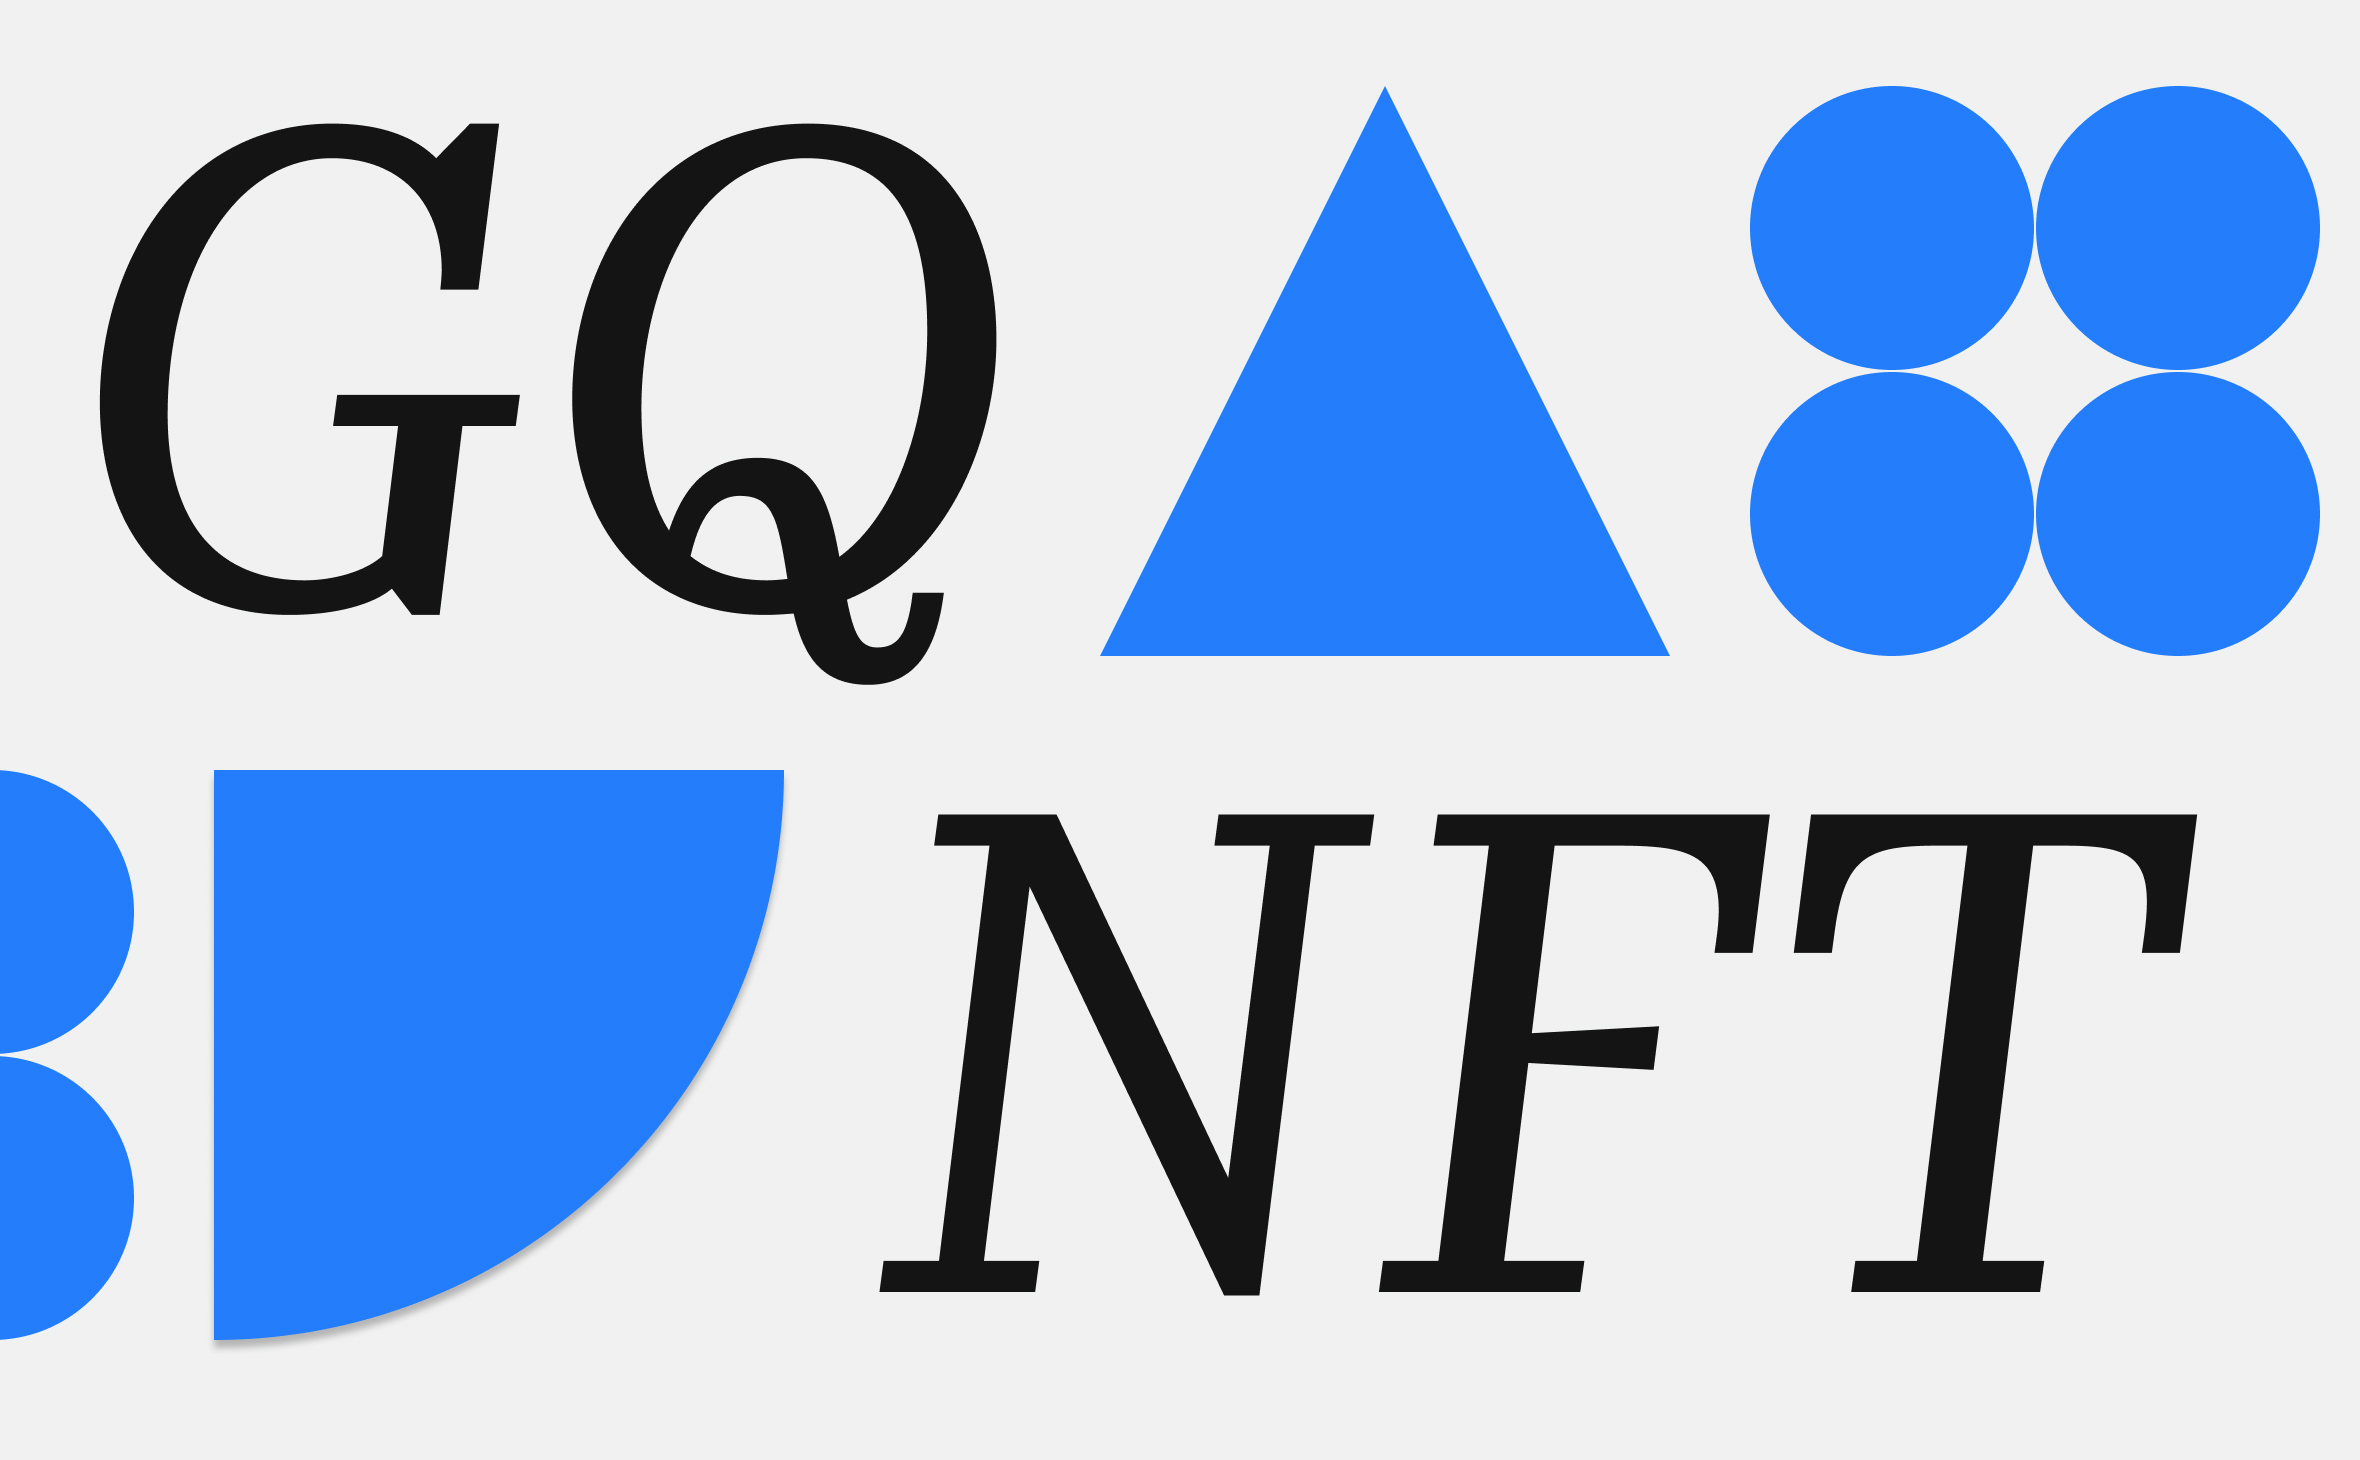 Журнал GQ выпустит первую NFT-коллекцию